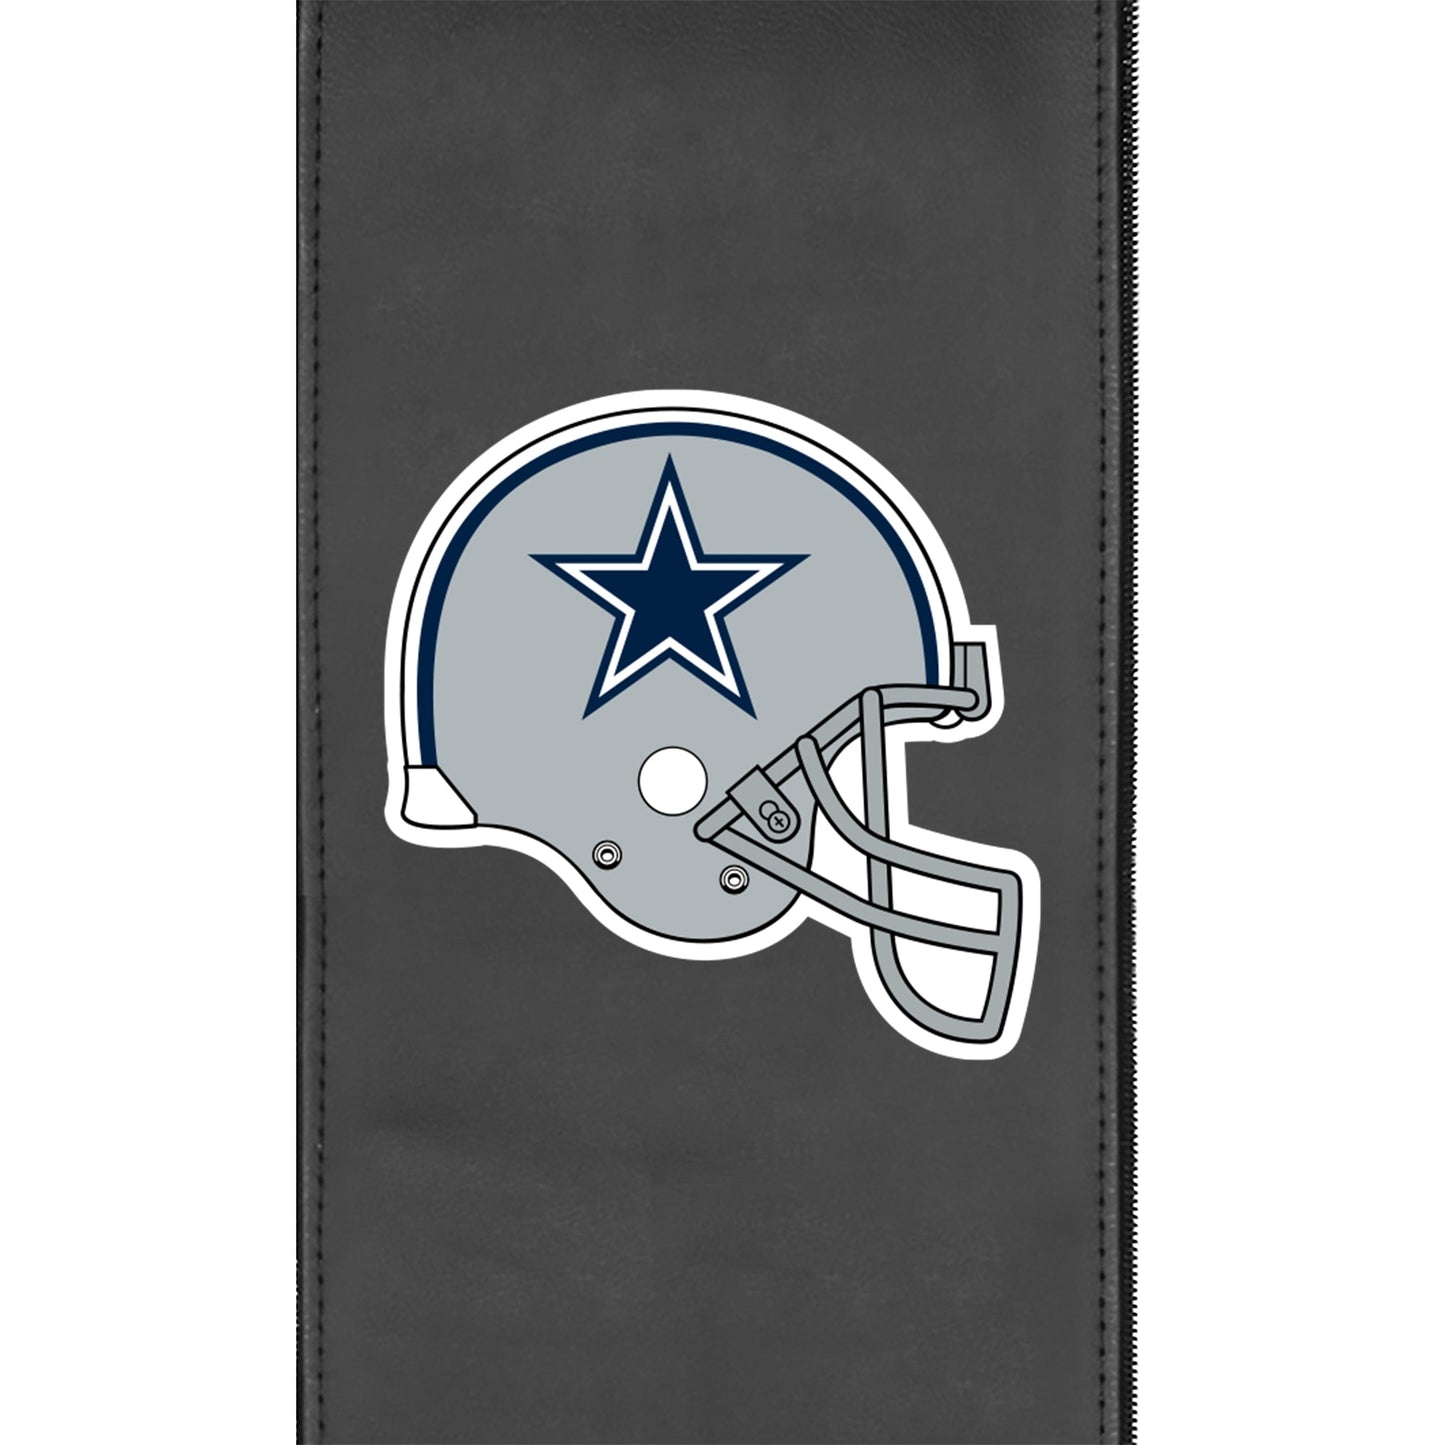 Silver Club Chair with  Dallas Cowboys Helmet Logo